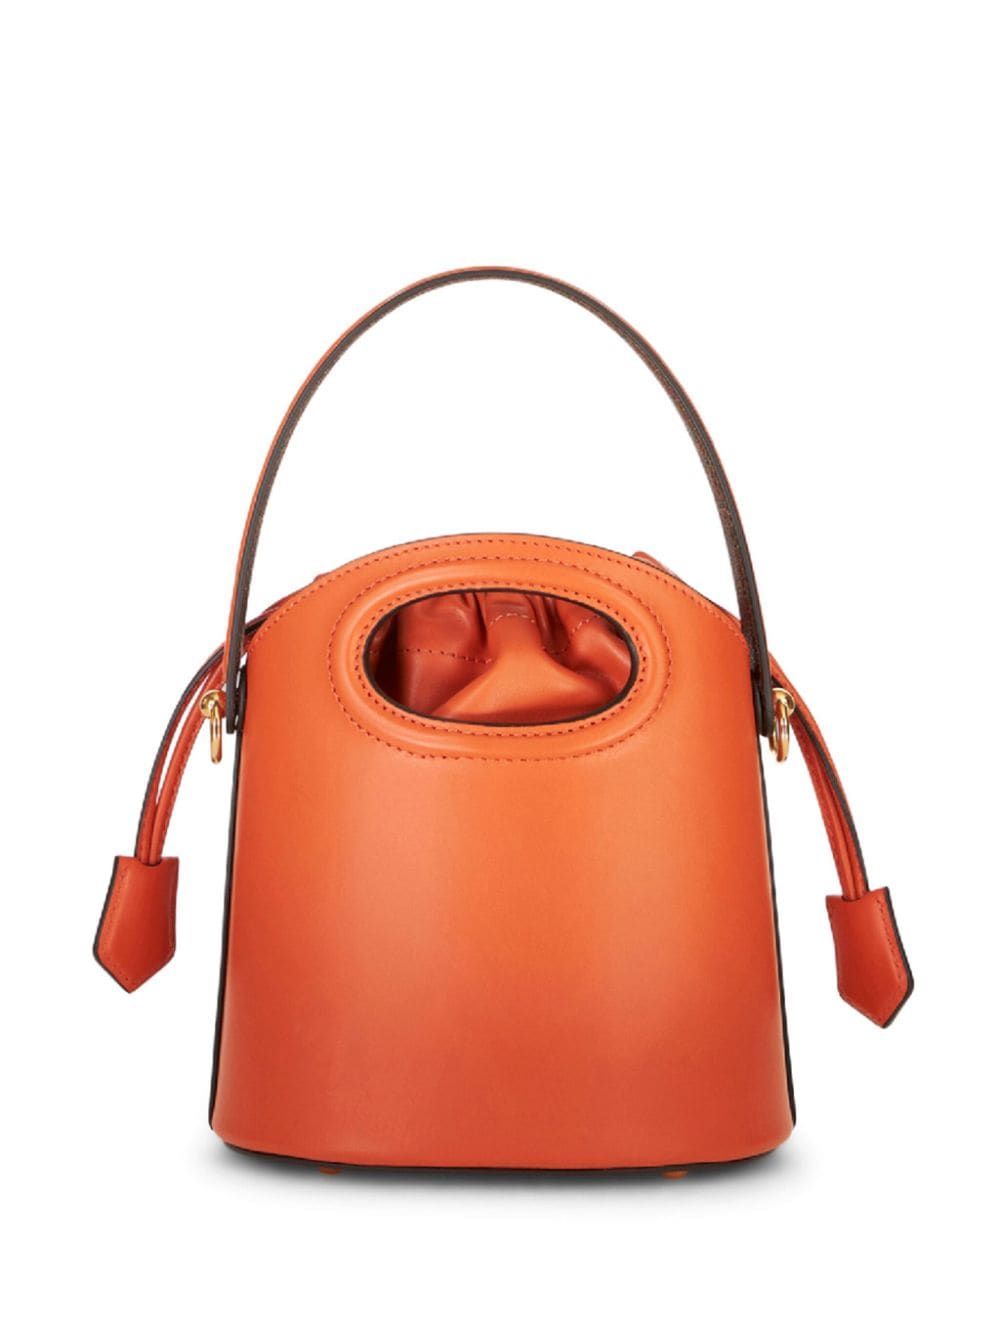 Túi xách nhỏ họa tiết Paisley đa màu sắc dành cho phụ nữ